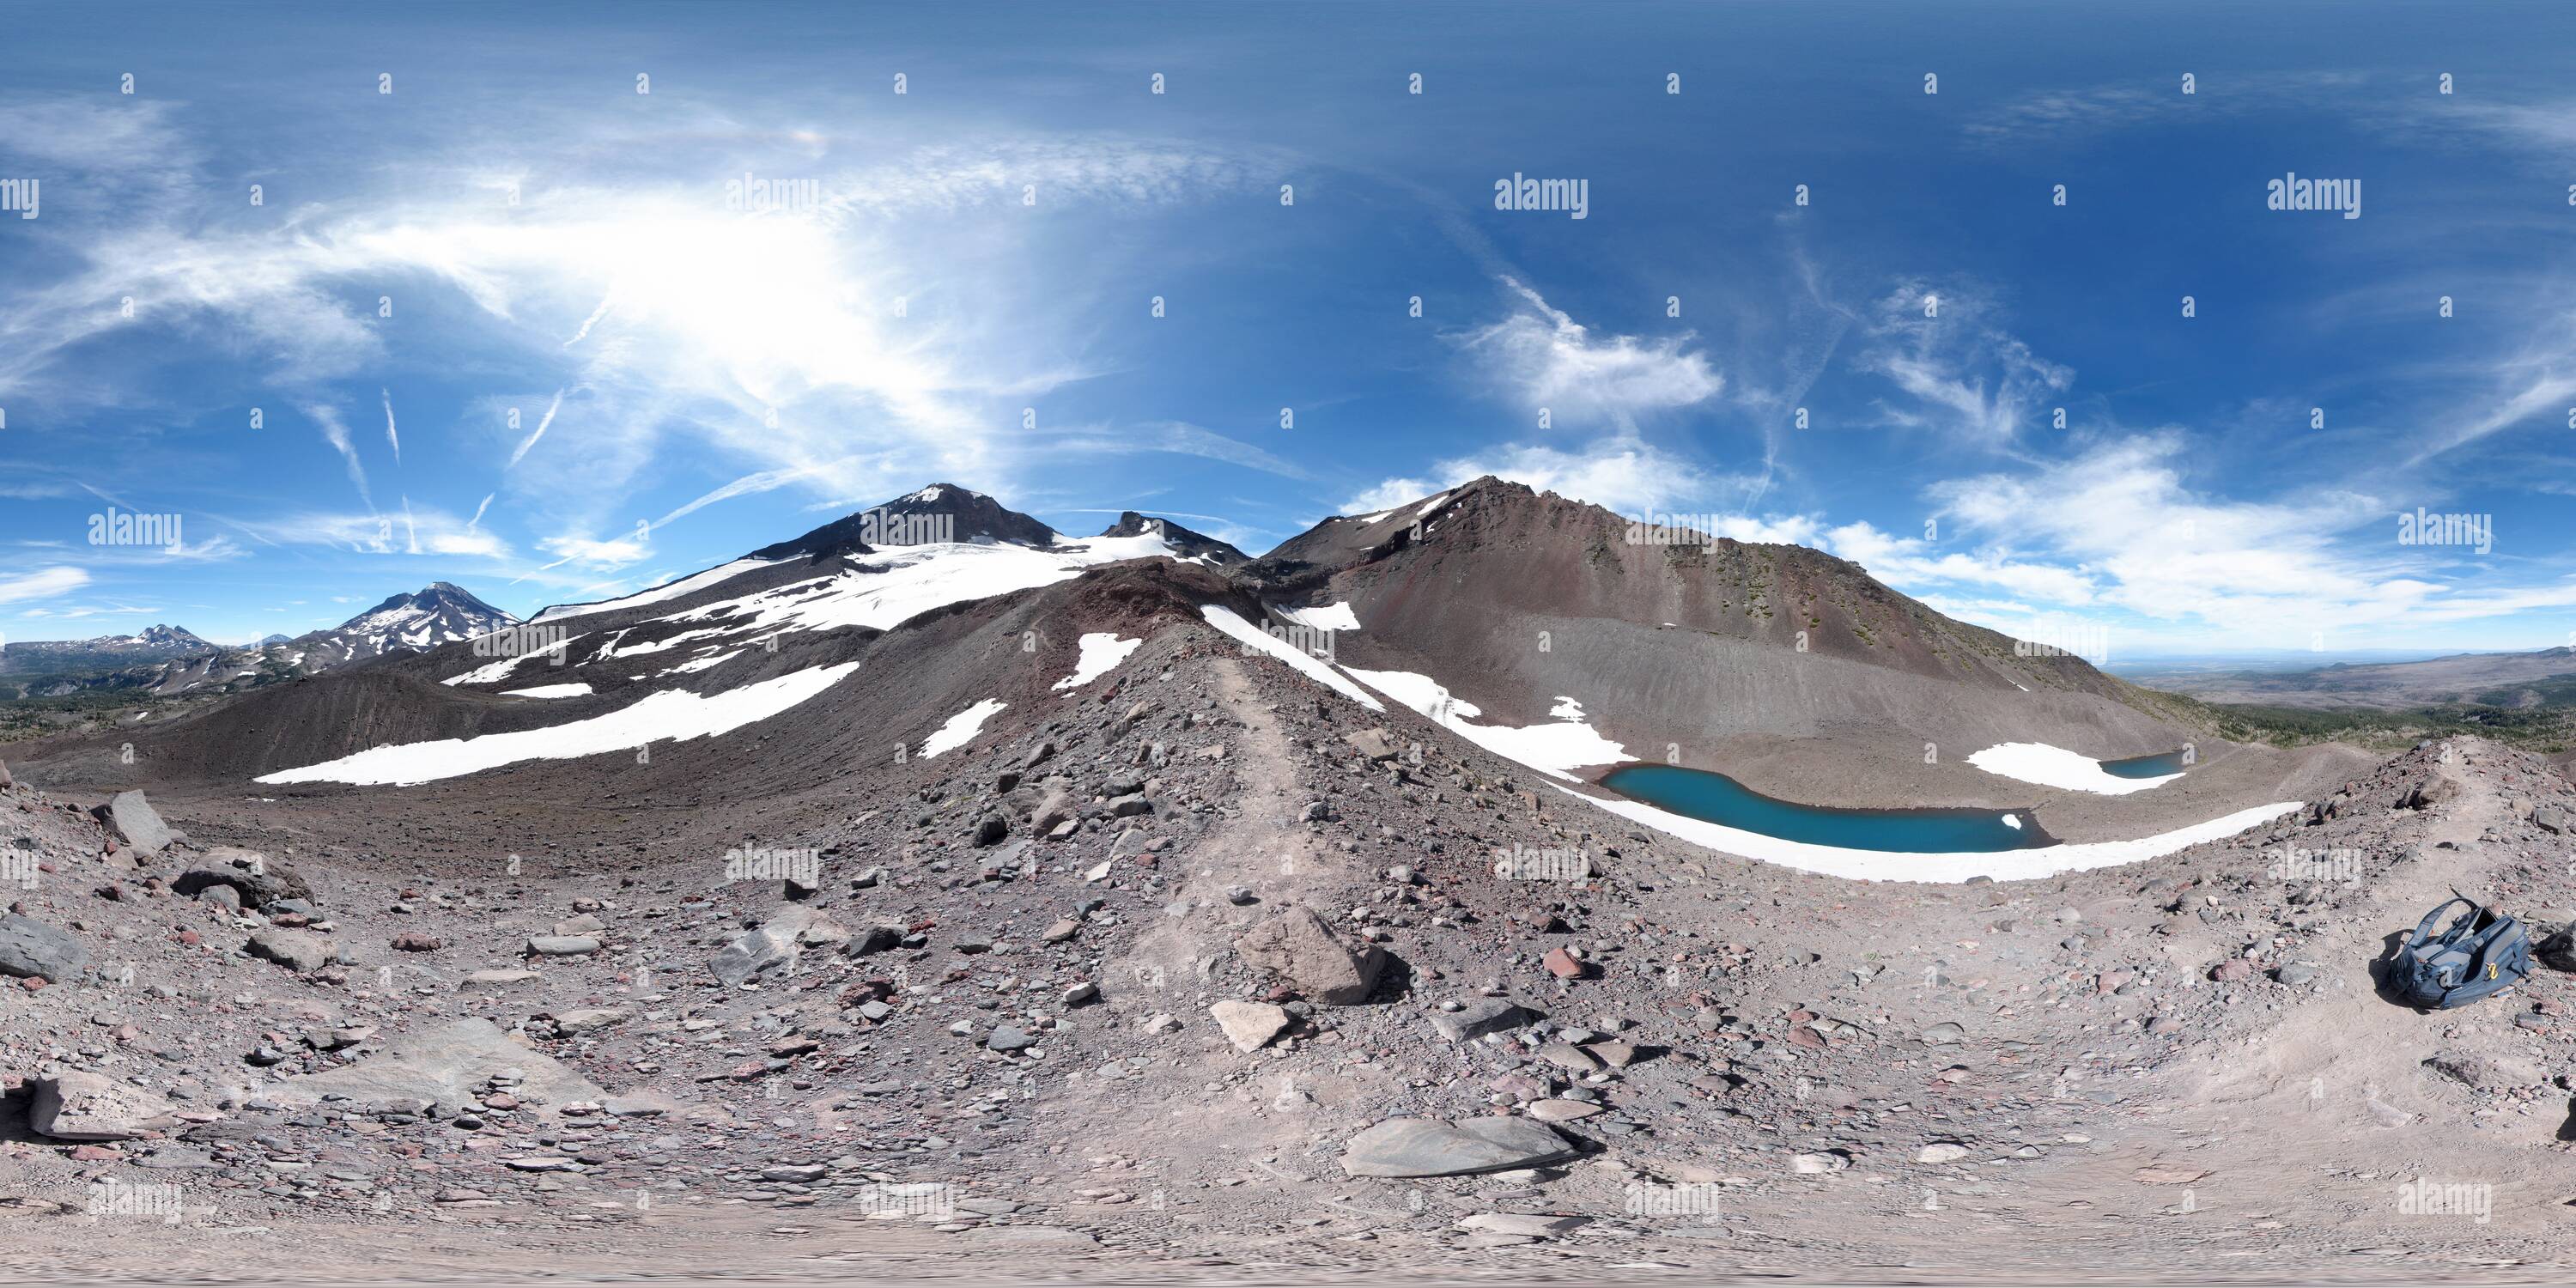 Vista panorámica en 360 grados de Hayden Glacier - morrenas lateral & tarns